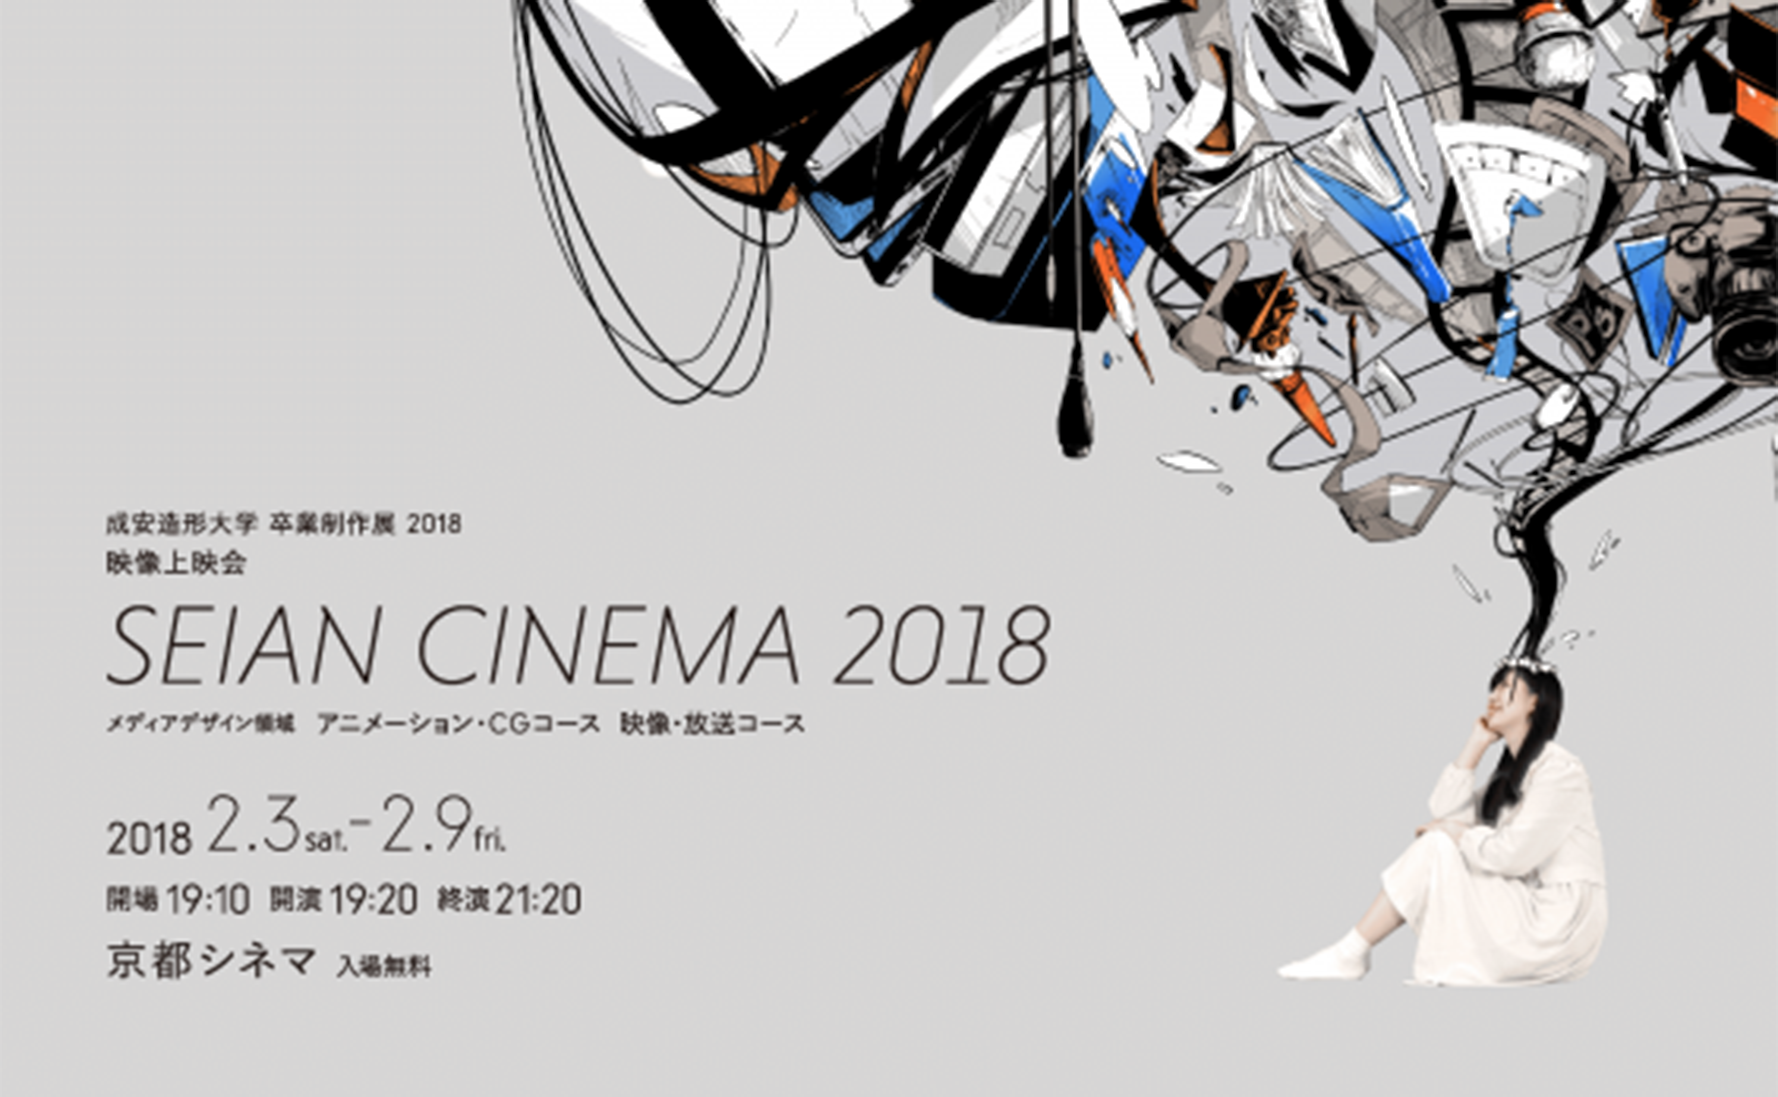 卒業制作展 Seian Cinema 18 作品映像 成安造形大学 メディアデザイン領域